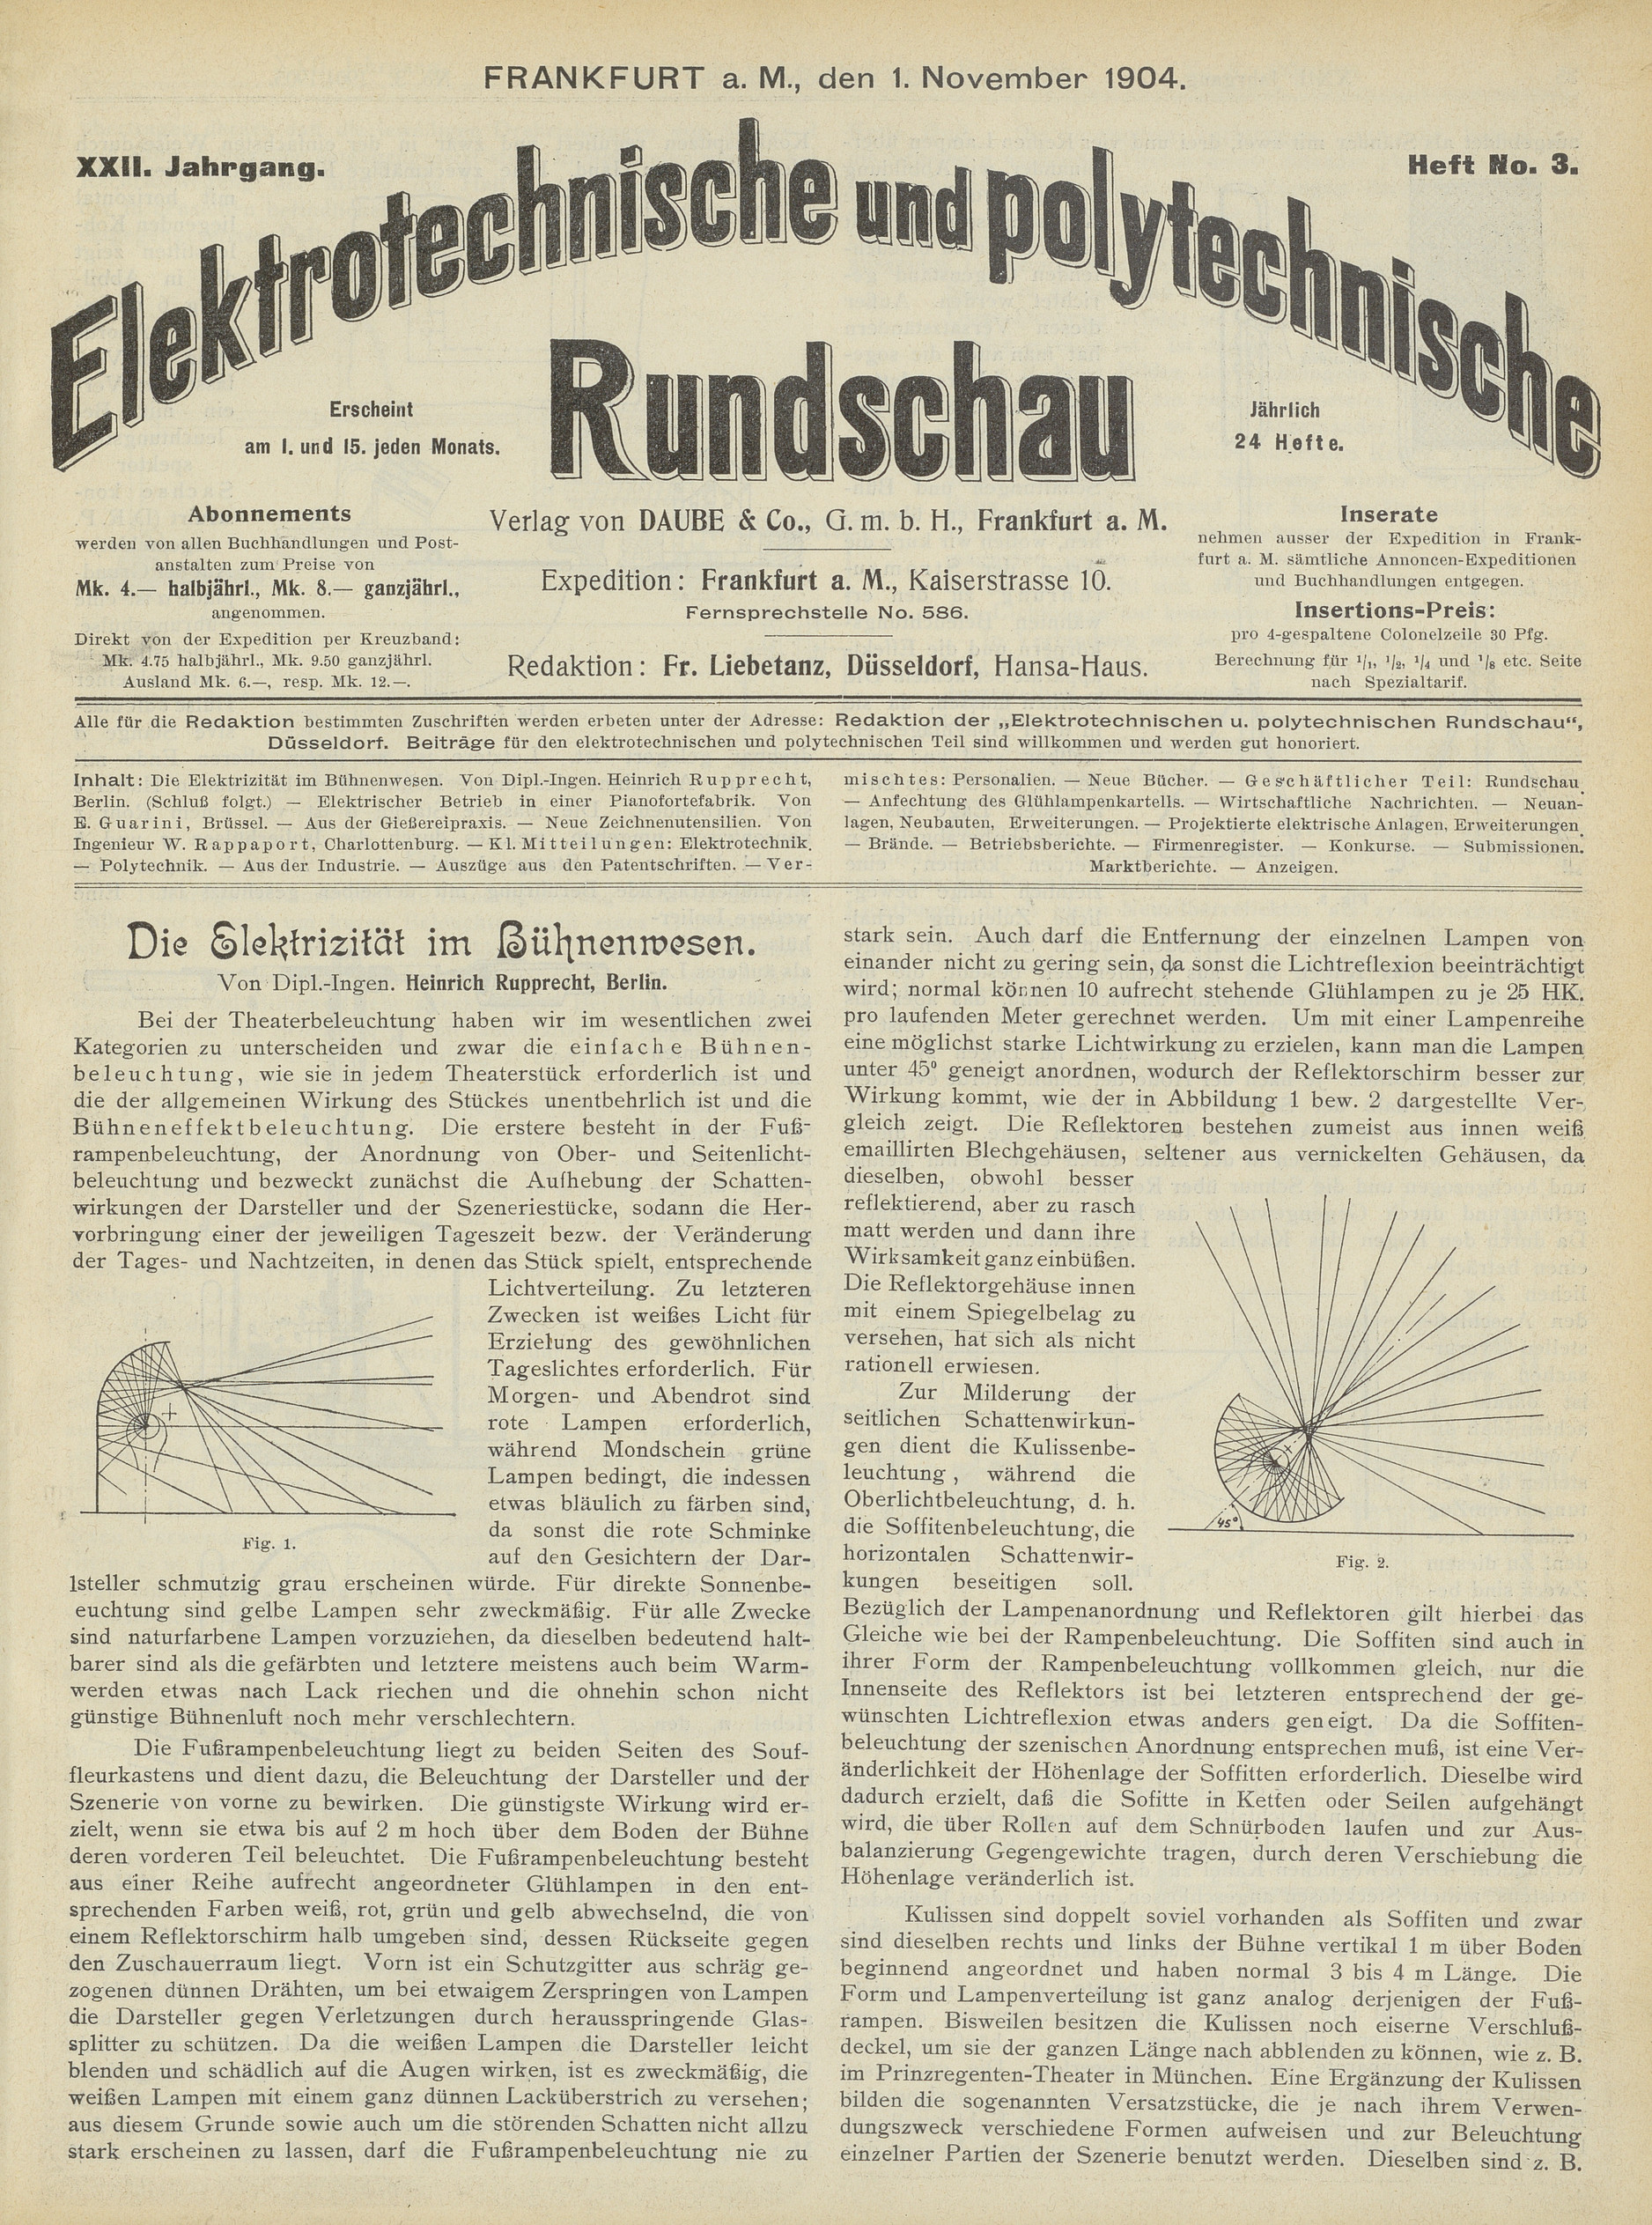 Elektrotechnische und polytechnische Rundschau, XXII. Jahrgang, Heft No. 3